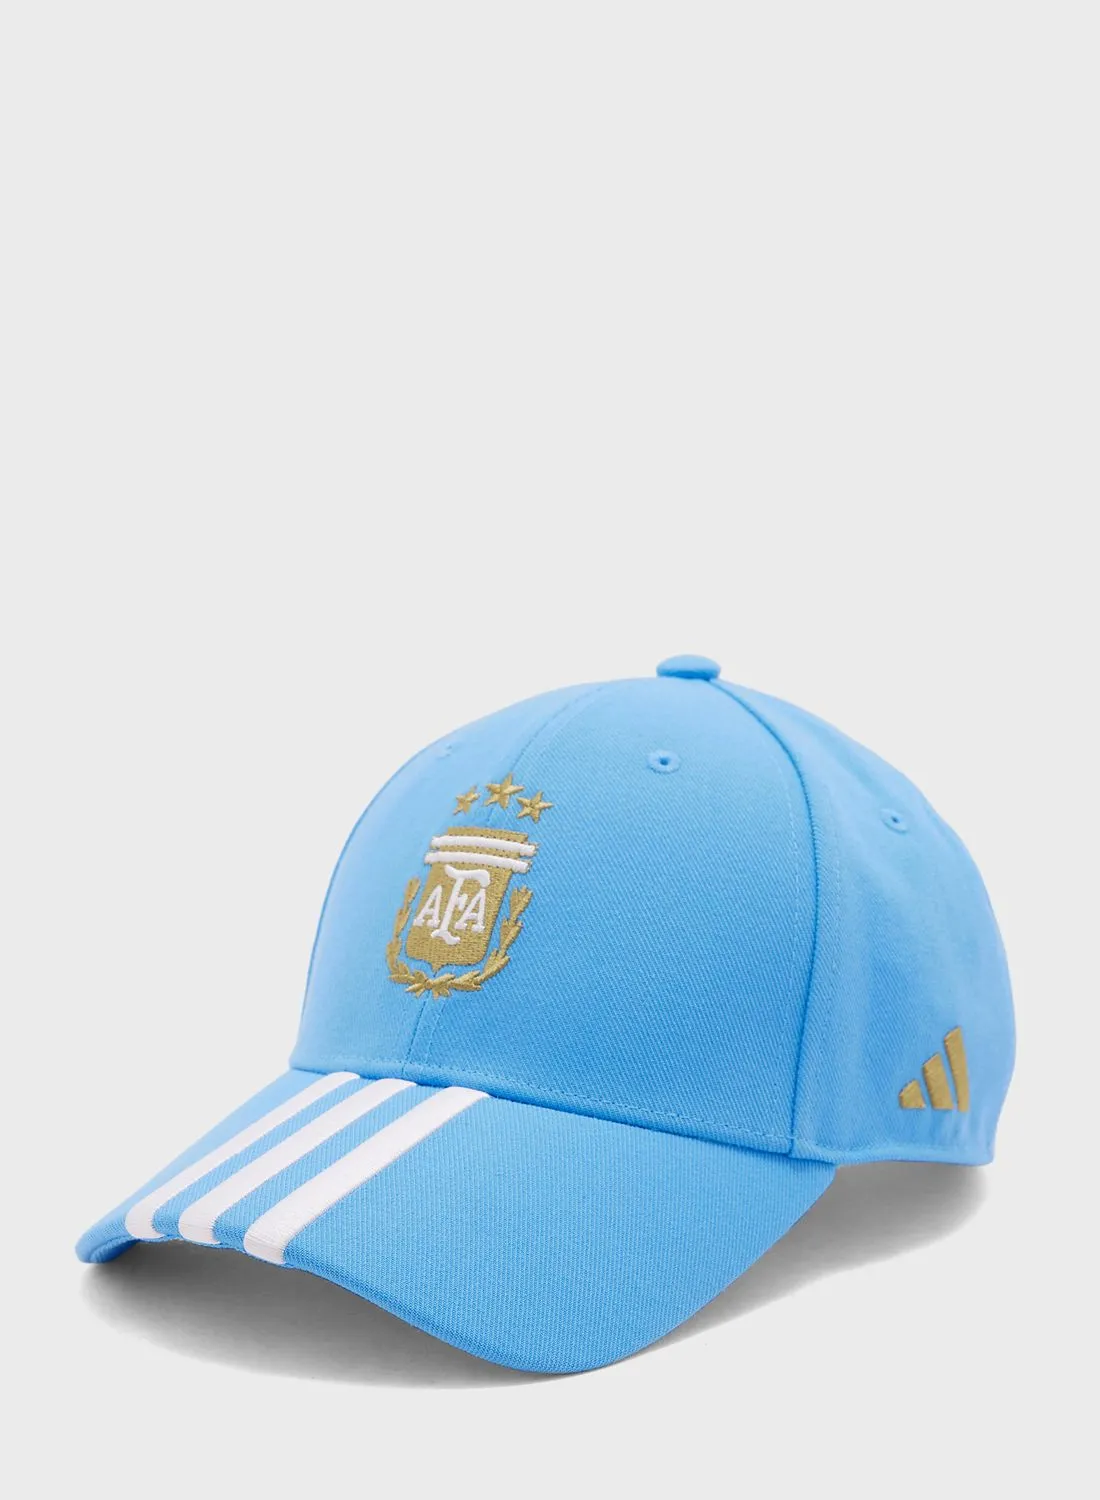 Adidas Argentina Cap